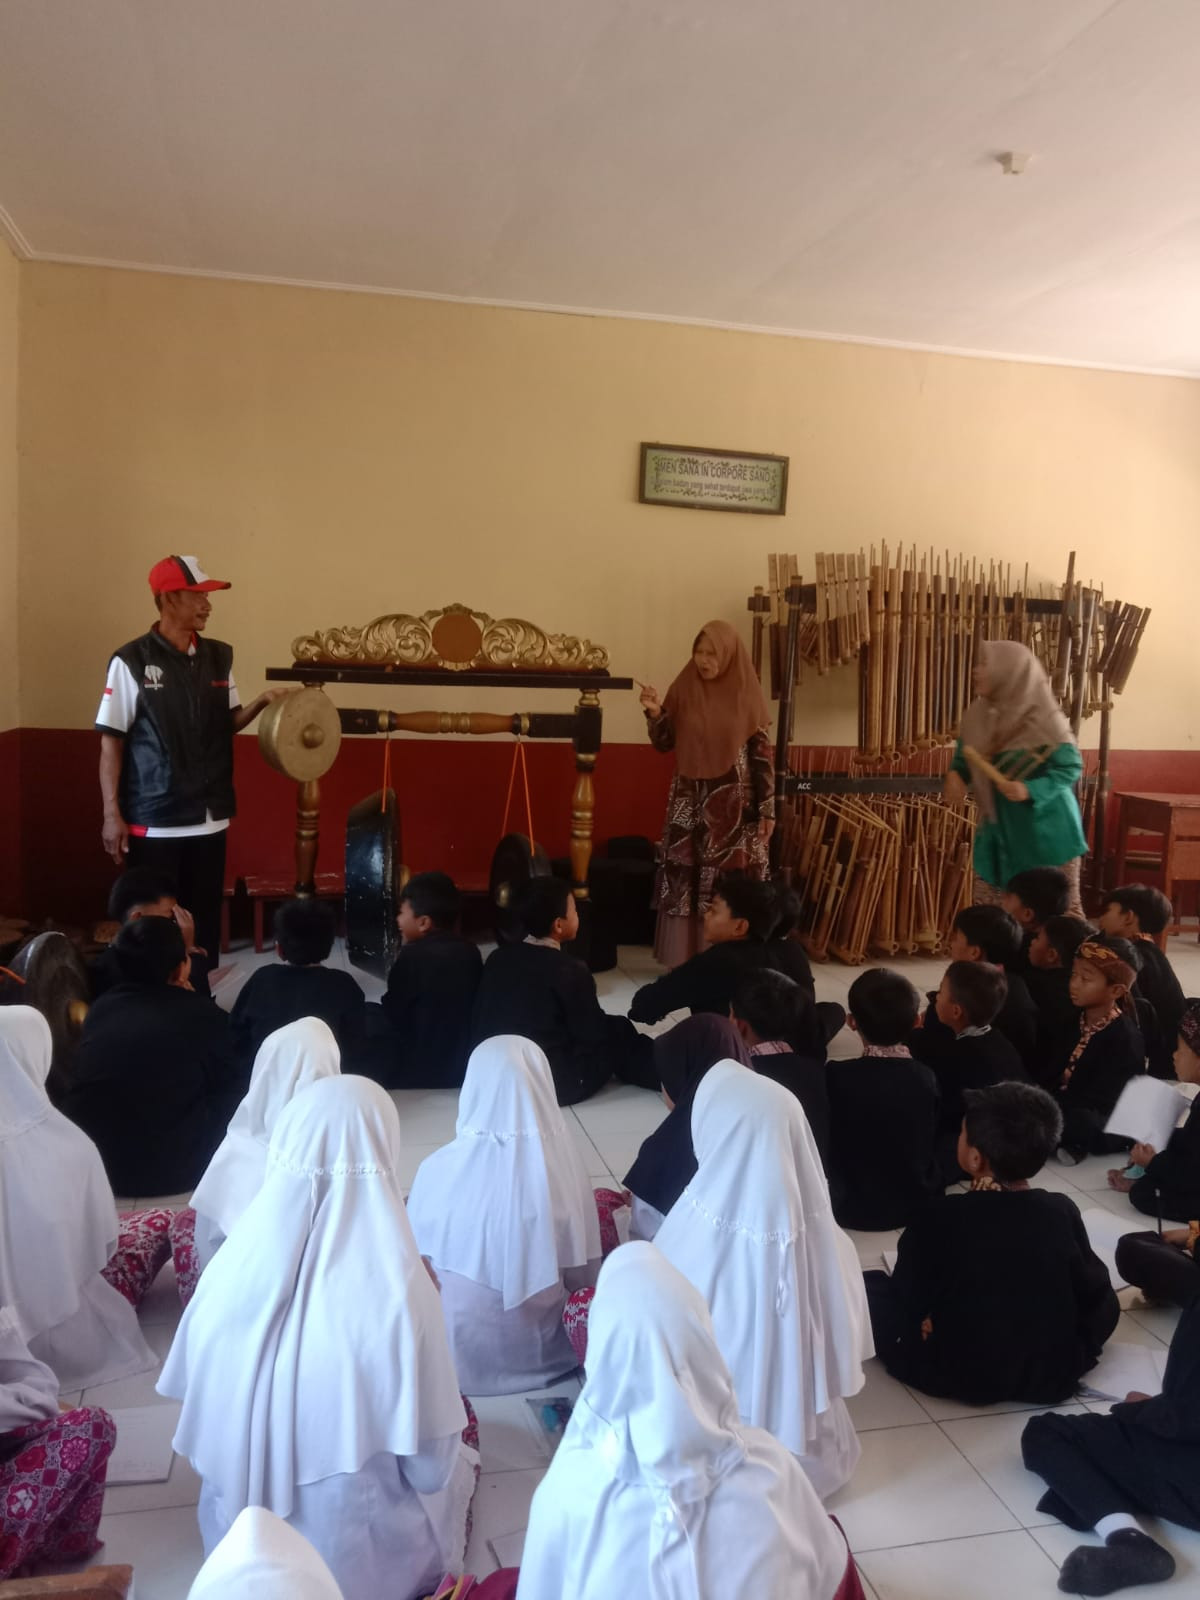 Memperkenalkan alat musik tradisional kepada anak sejak dini ,untuk melestarikan budaya Sunda